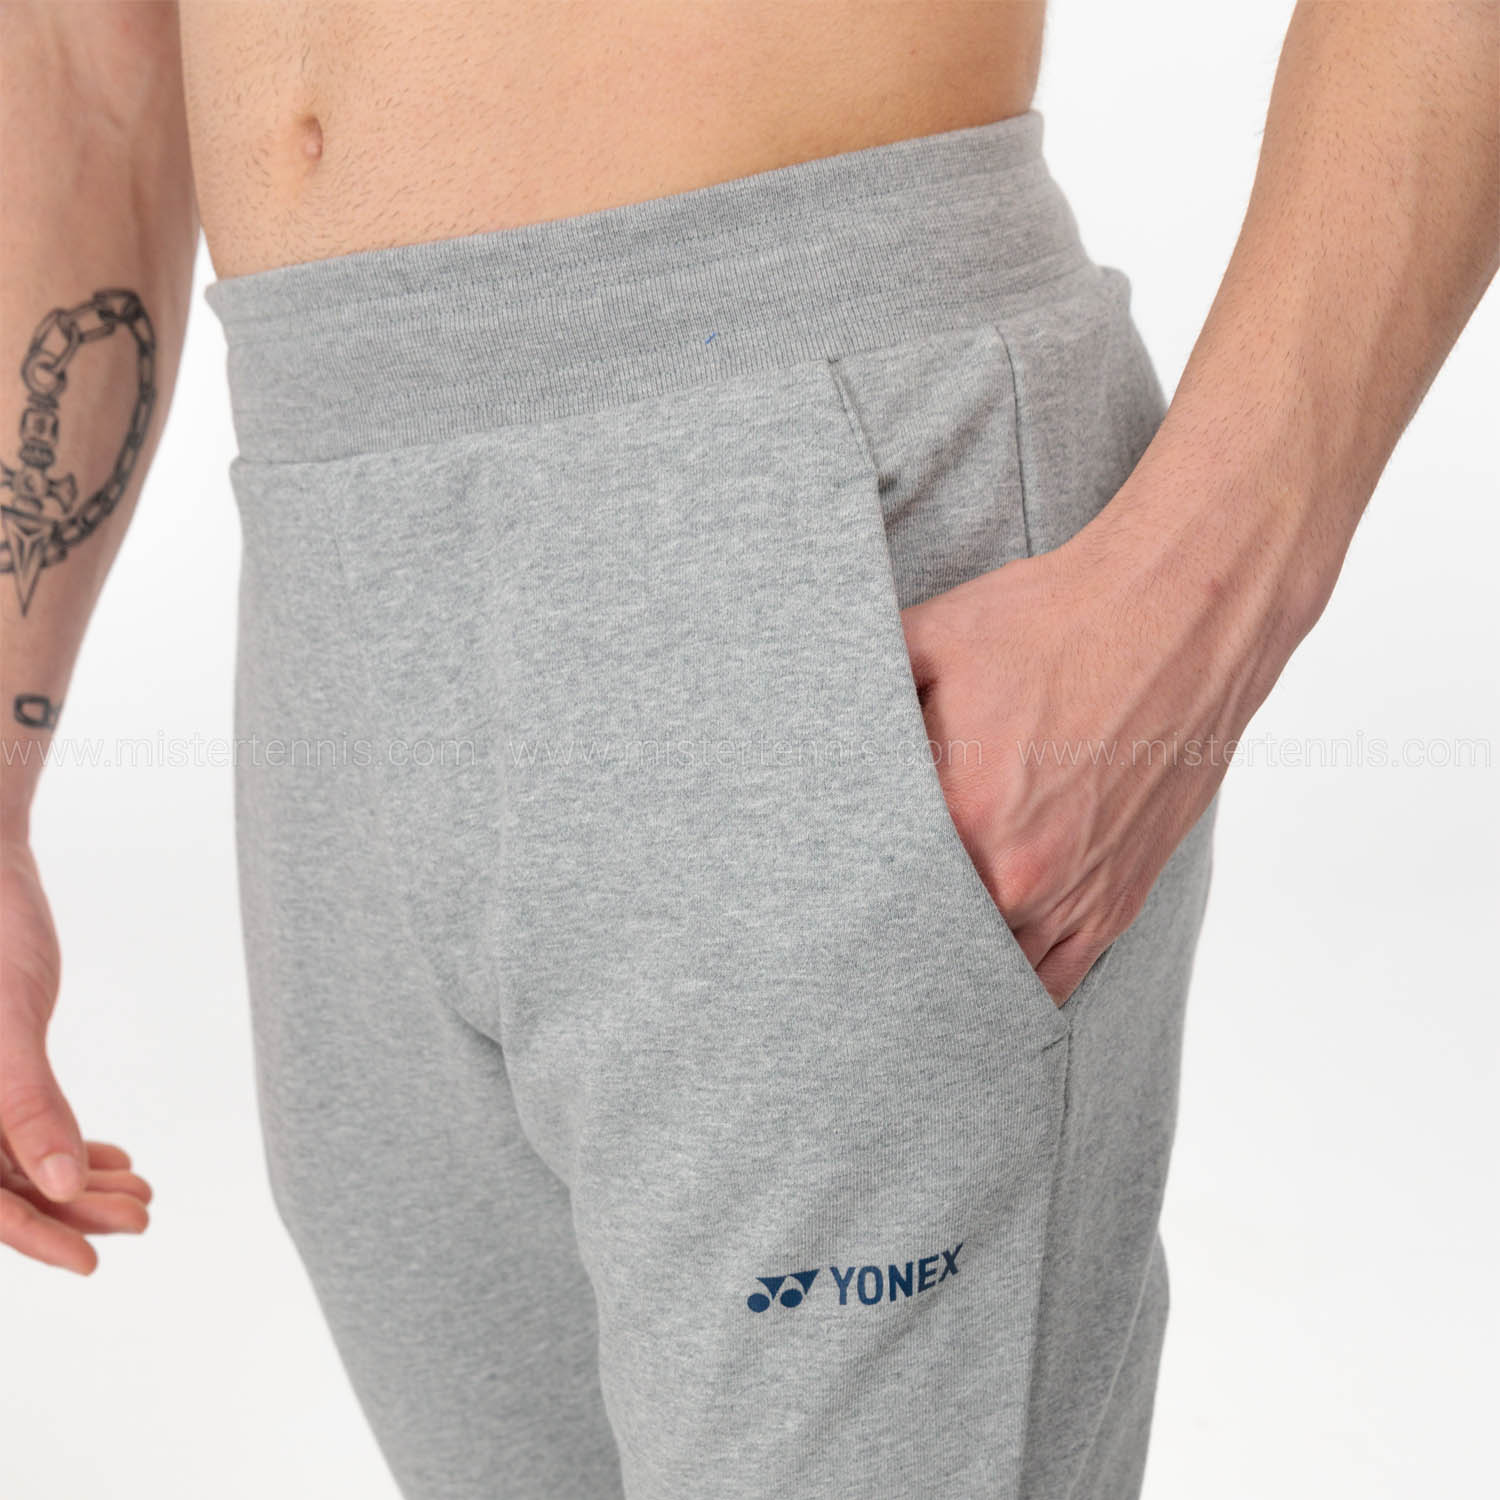 Yonex Club Pants - Grey